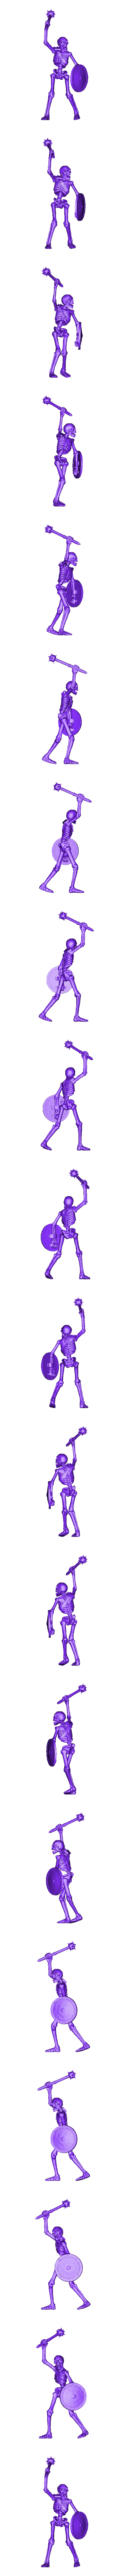 skeletons_1_52mm.stl Archivo STL Set de 7 esqueletos de guerreros (+ versión precompatible) (18) - Oscuridad Caos Medieval Age of Sigmar Fantasy Warhammer・Objeto imprimible en 3D para descargar, Hartolia-Miniatures